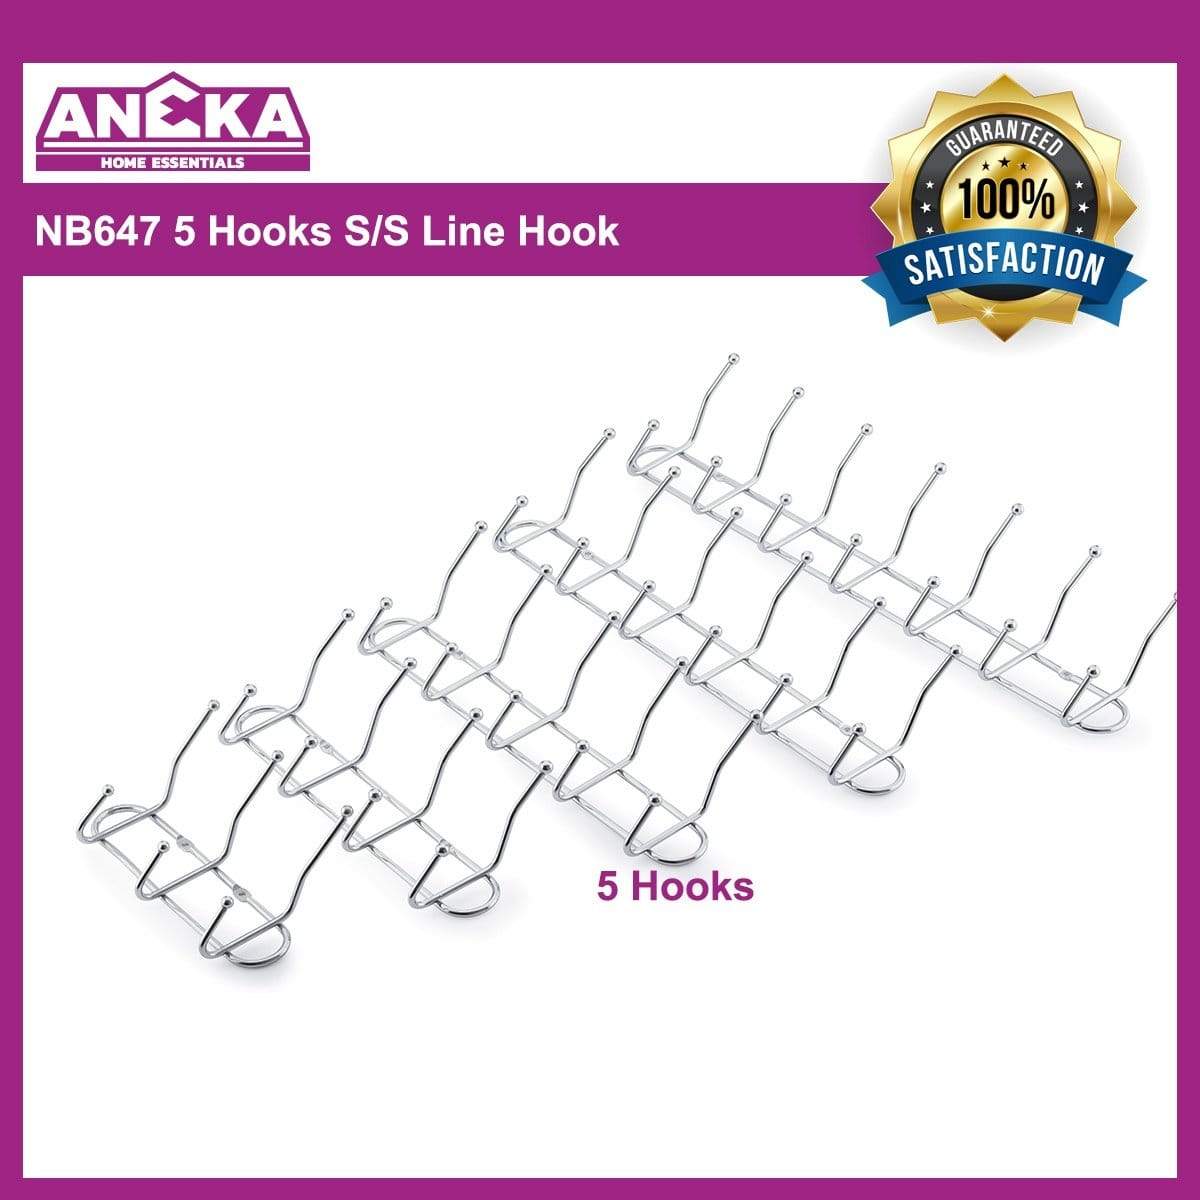 NB647 5 Hooks S/S Line Hook